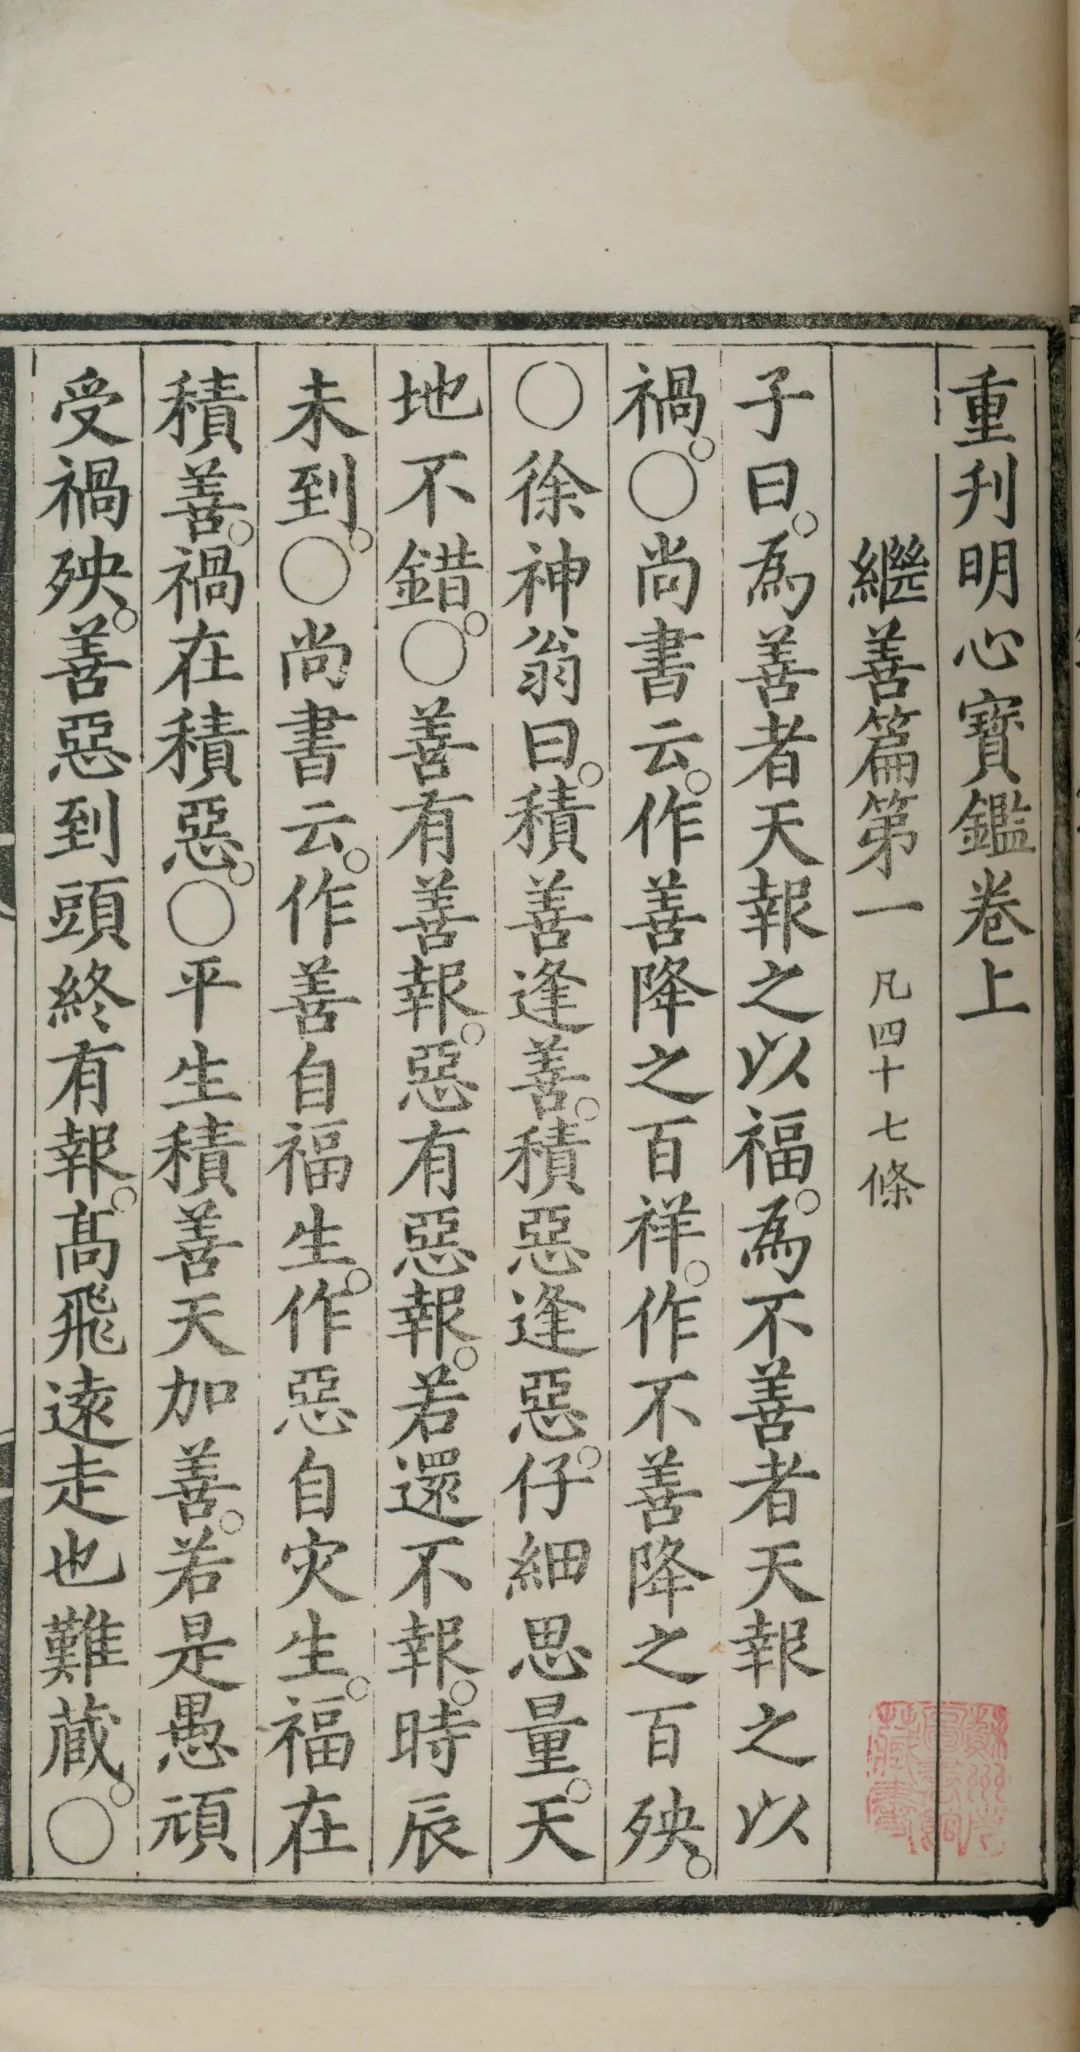 明嘉靖三十二年（1553） 内府太监曹玄刻《重刊明心宝鉴》 苏州图书馆 藏